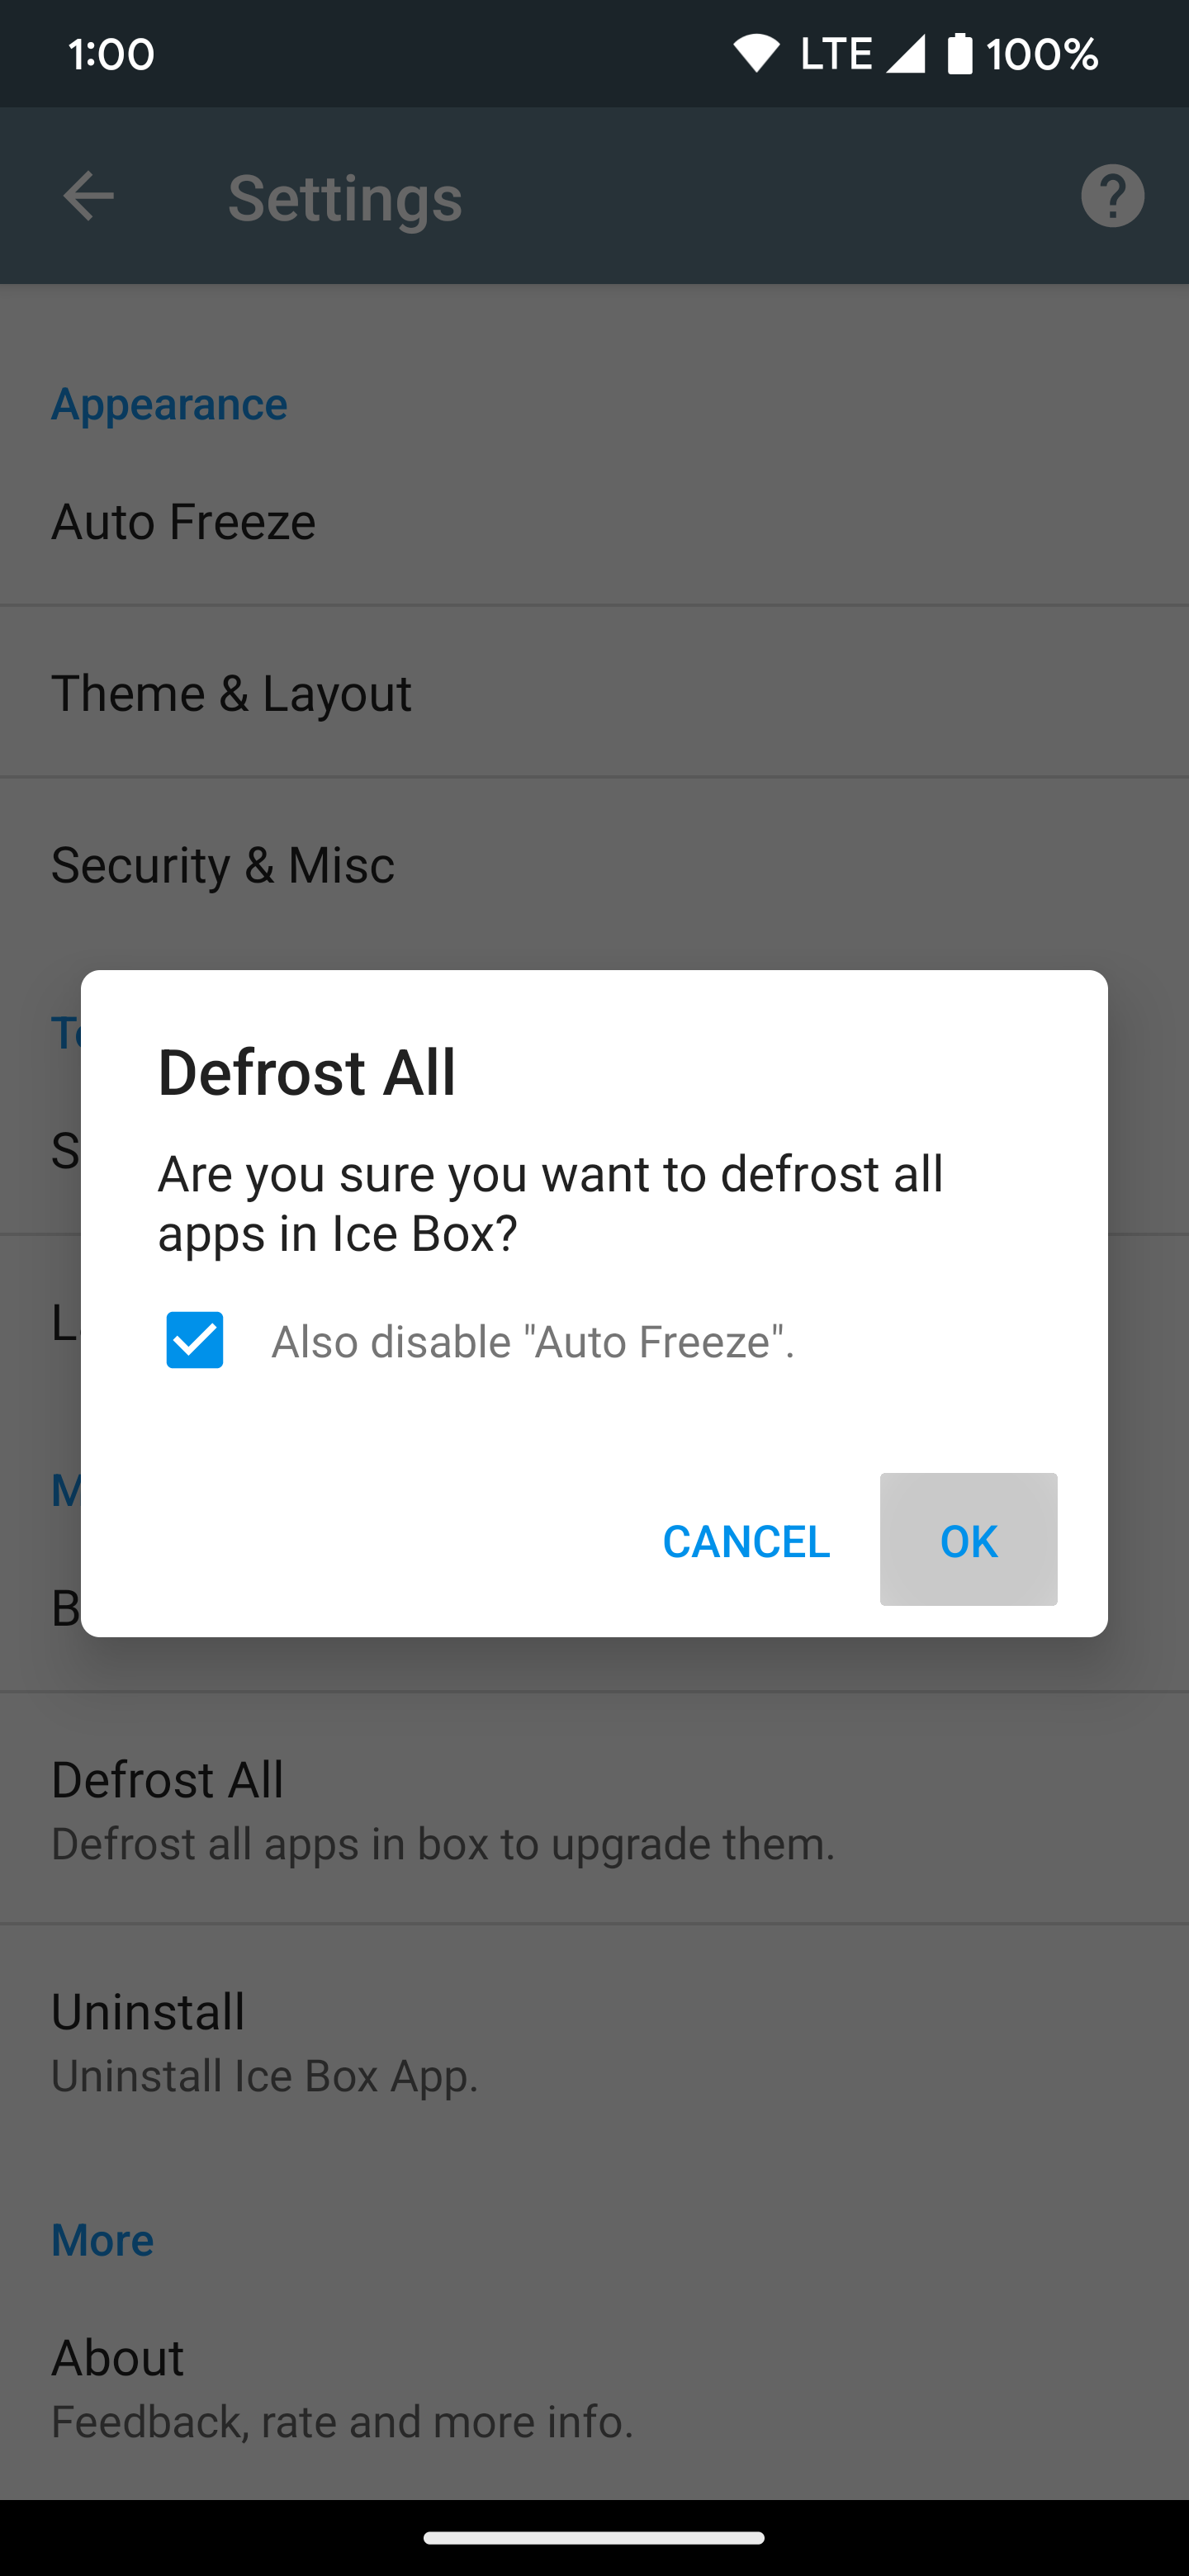 Confirmando a opção Defrost All no aplicativo Ice Box e pressionando OK para confirmar a seleção